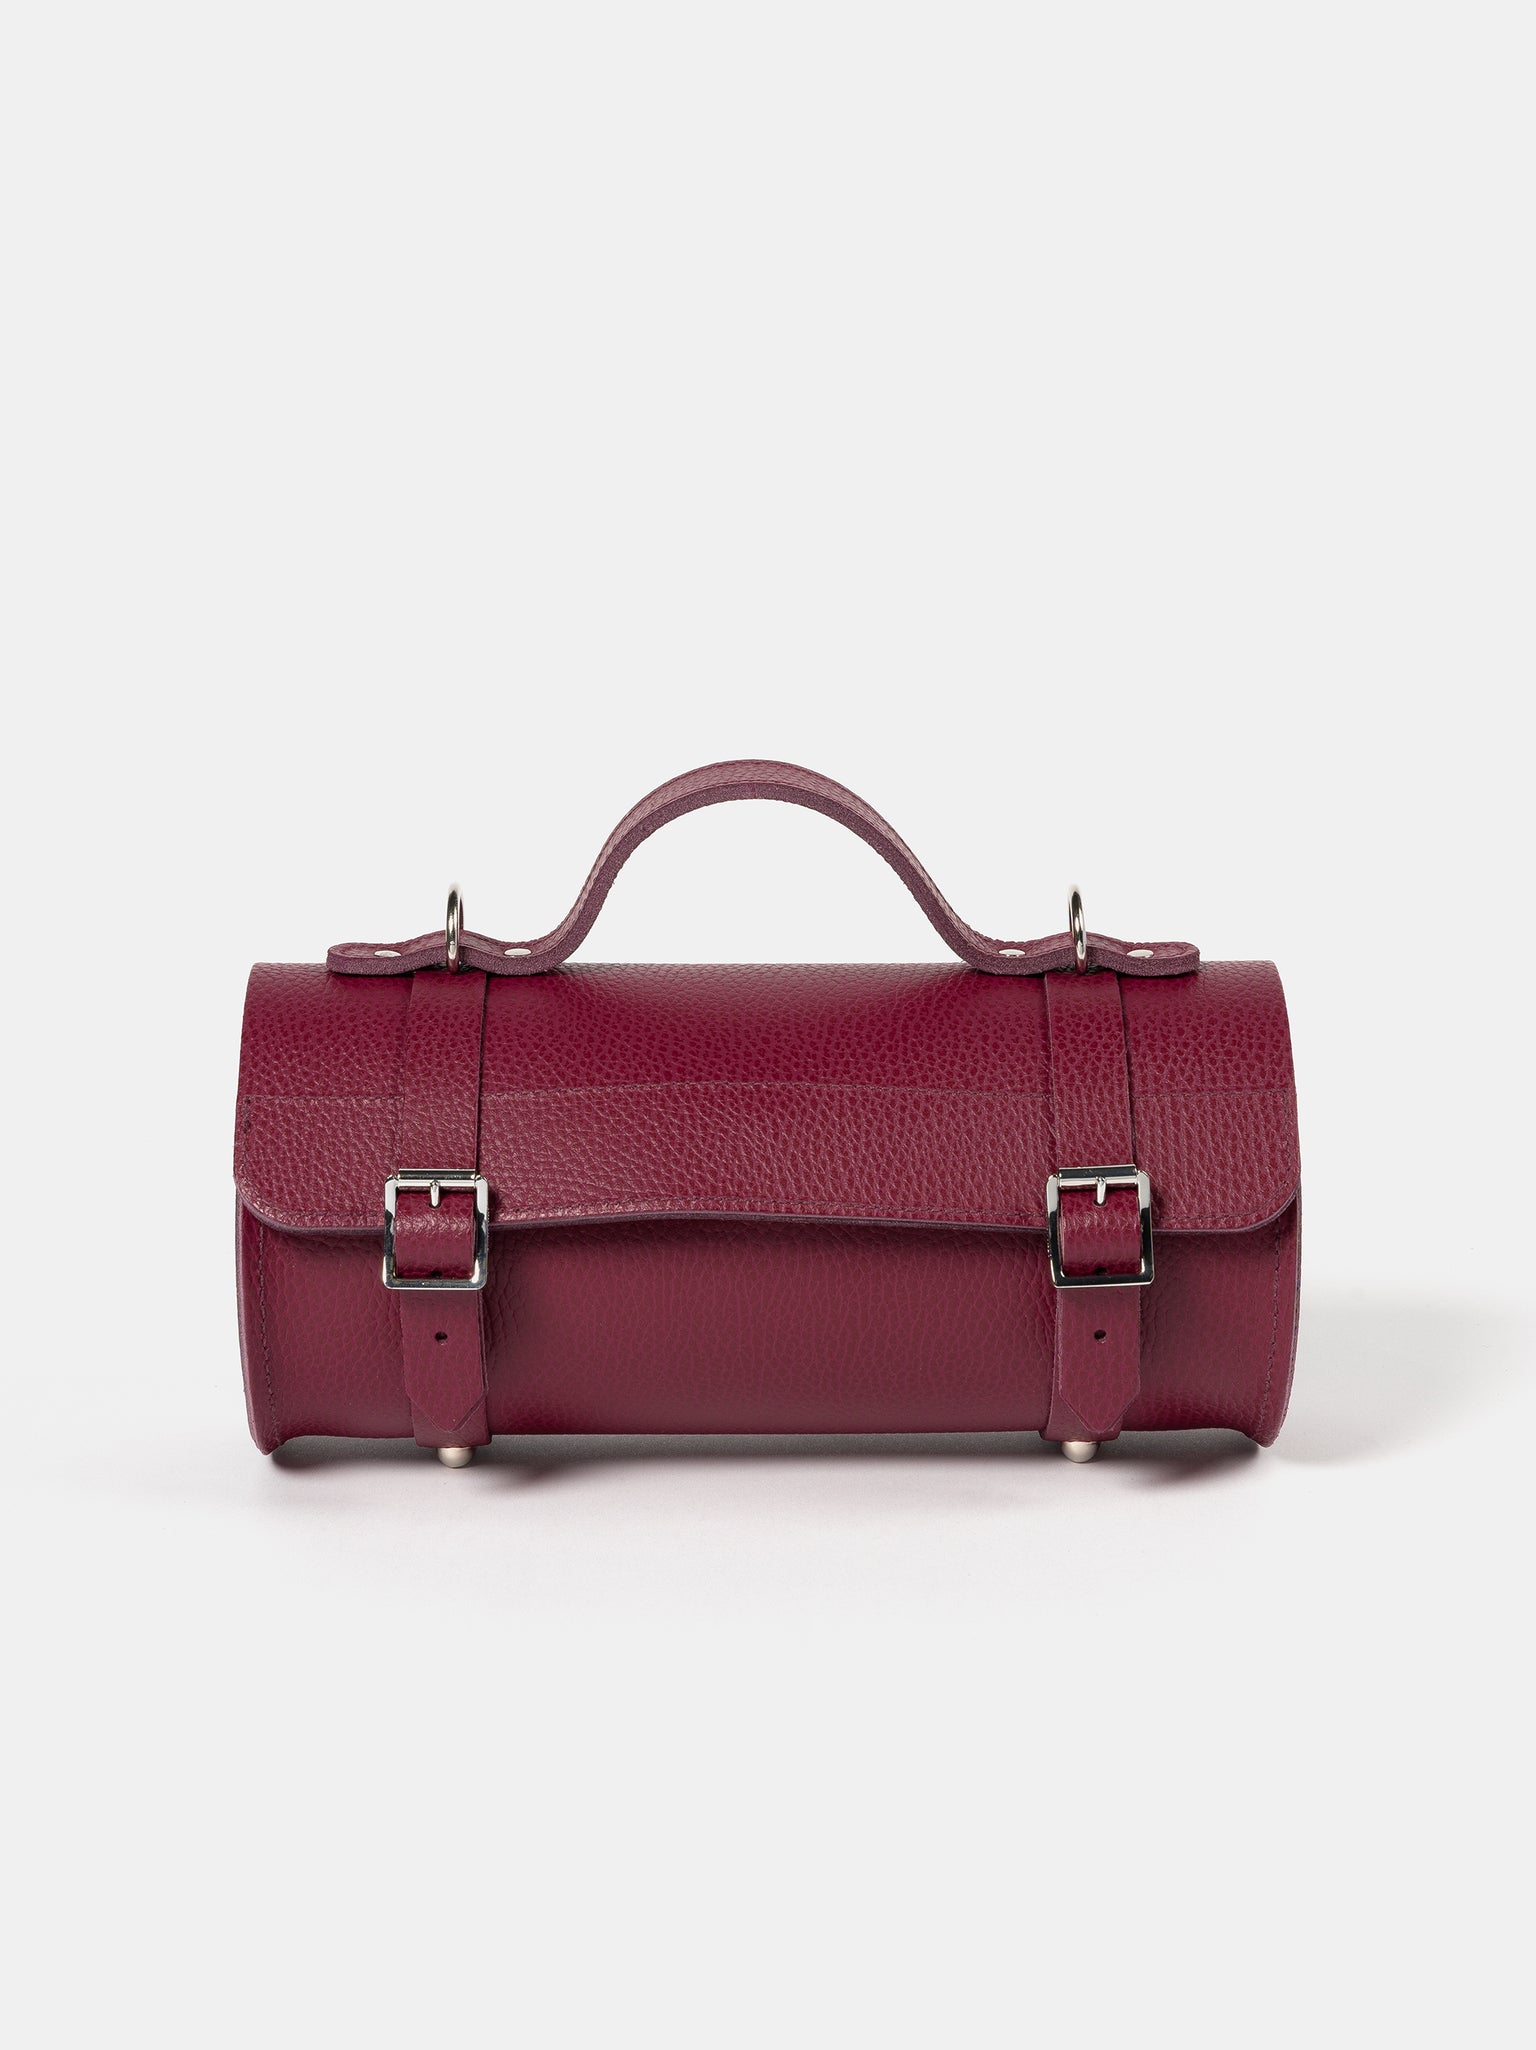 Turnered Red (V) leather bag